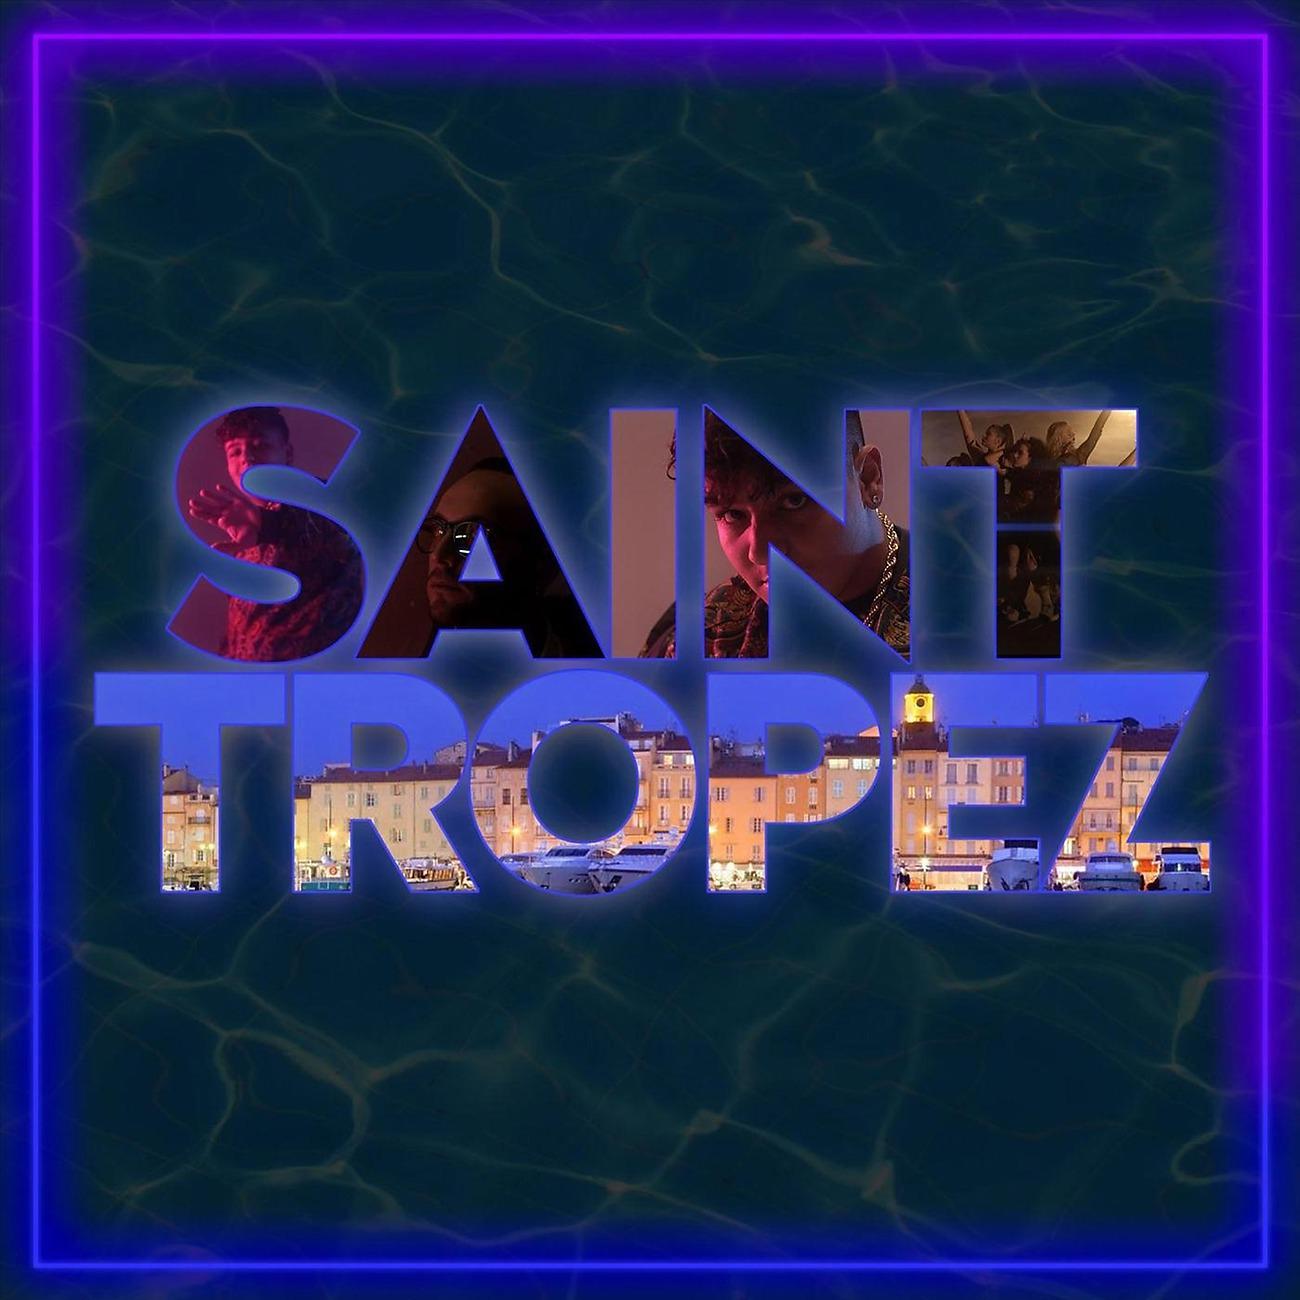 Постер альбома Saint Tropez